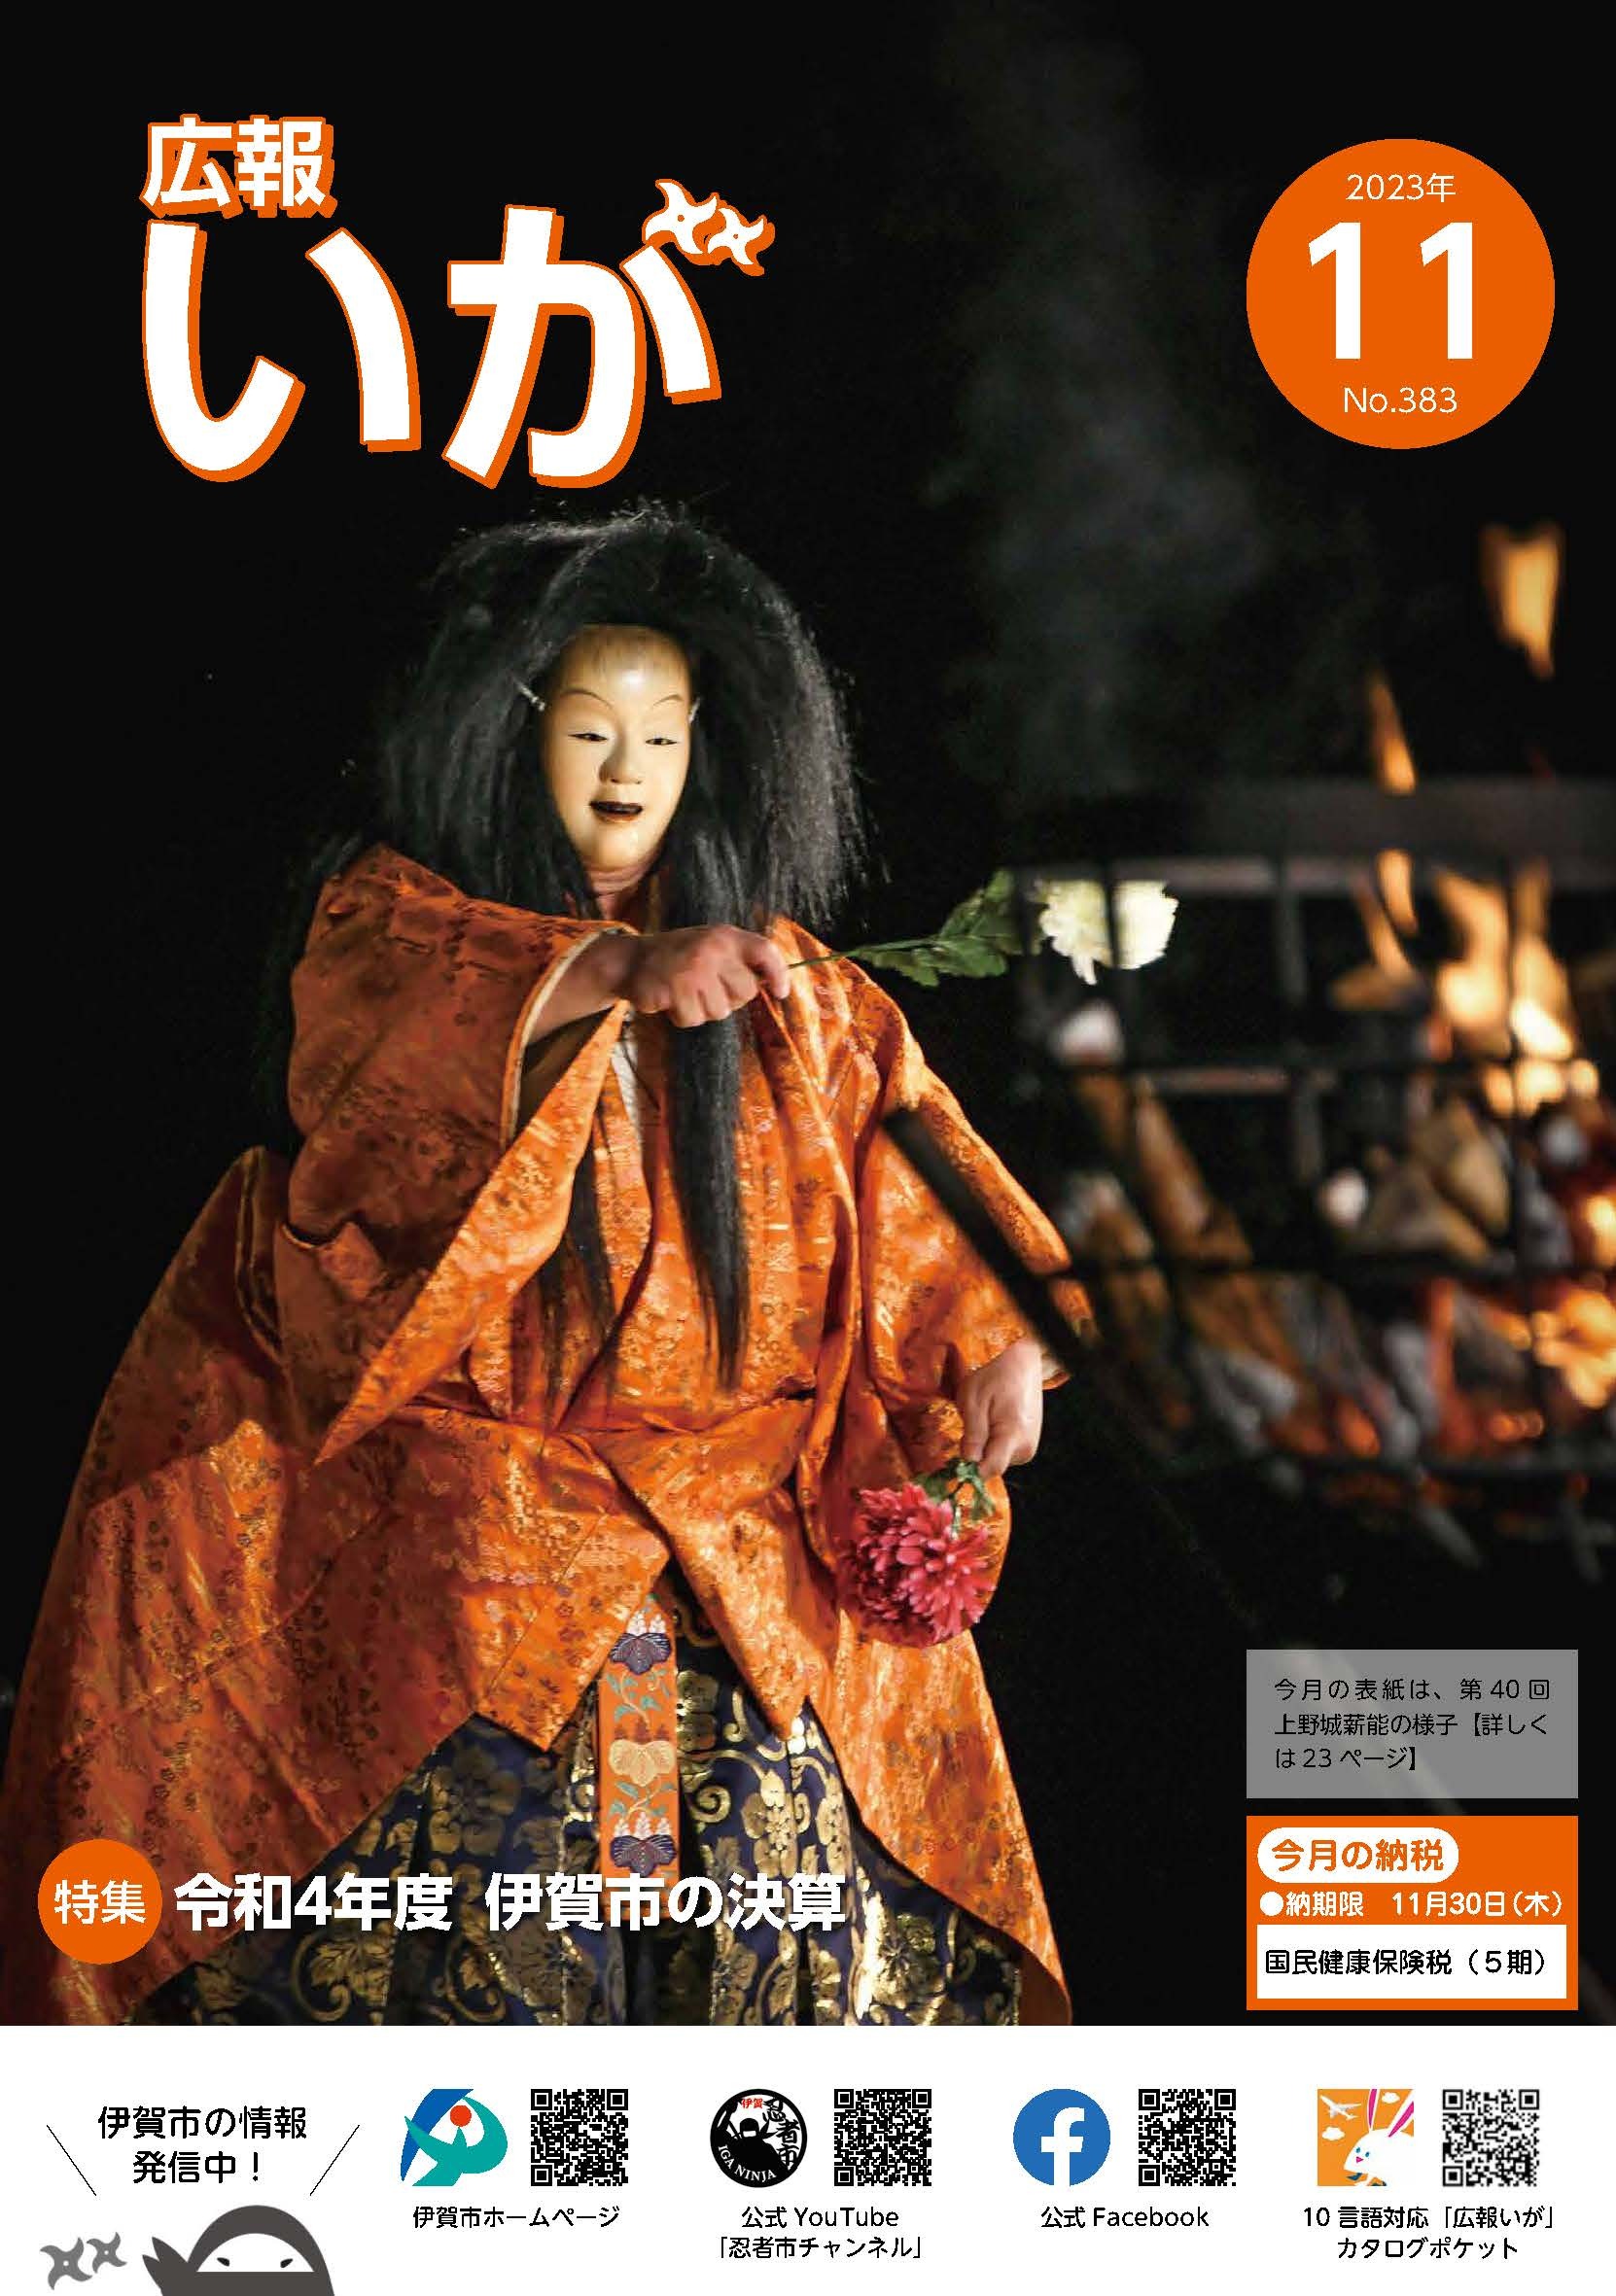 今月の表紙は第40回上野城薪能の様子